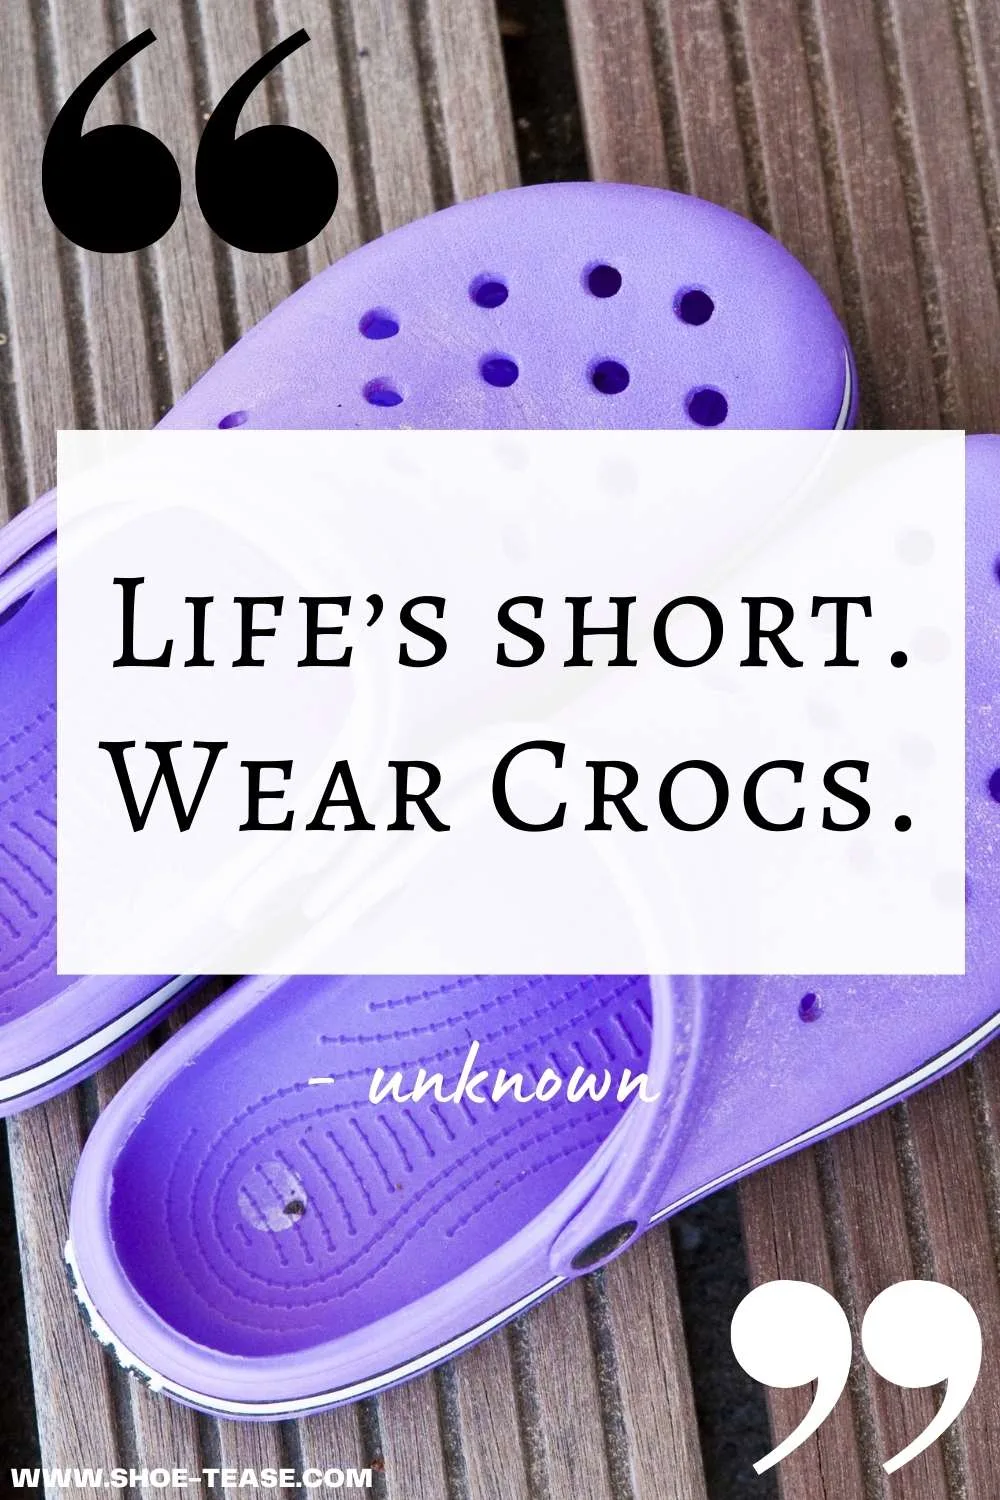 crocs slogan